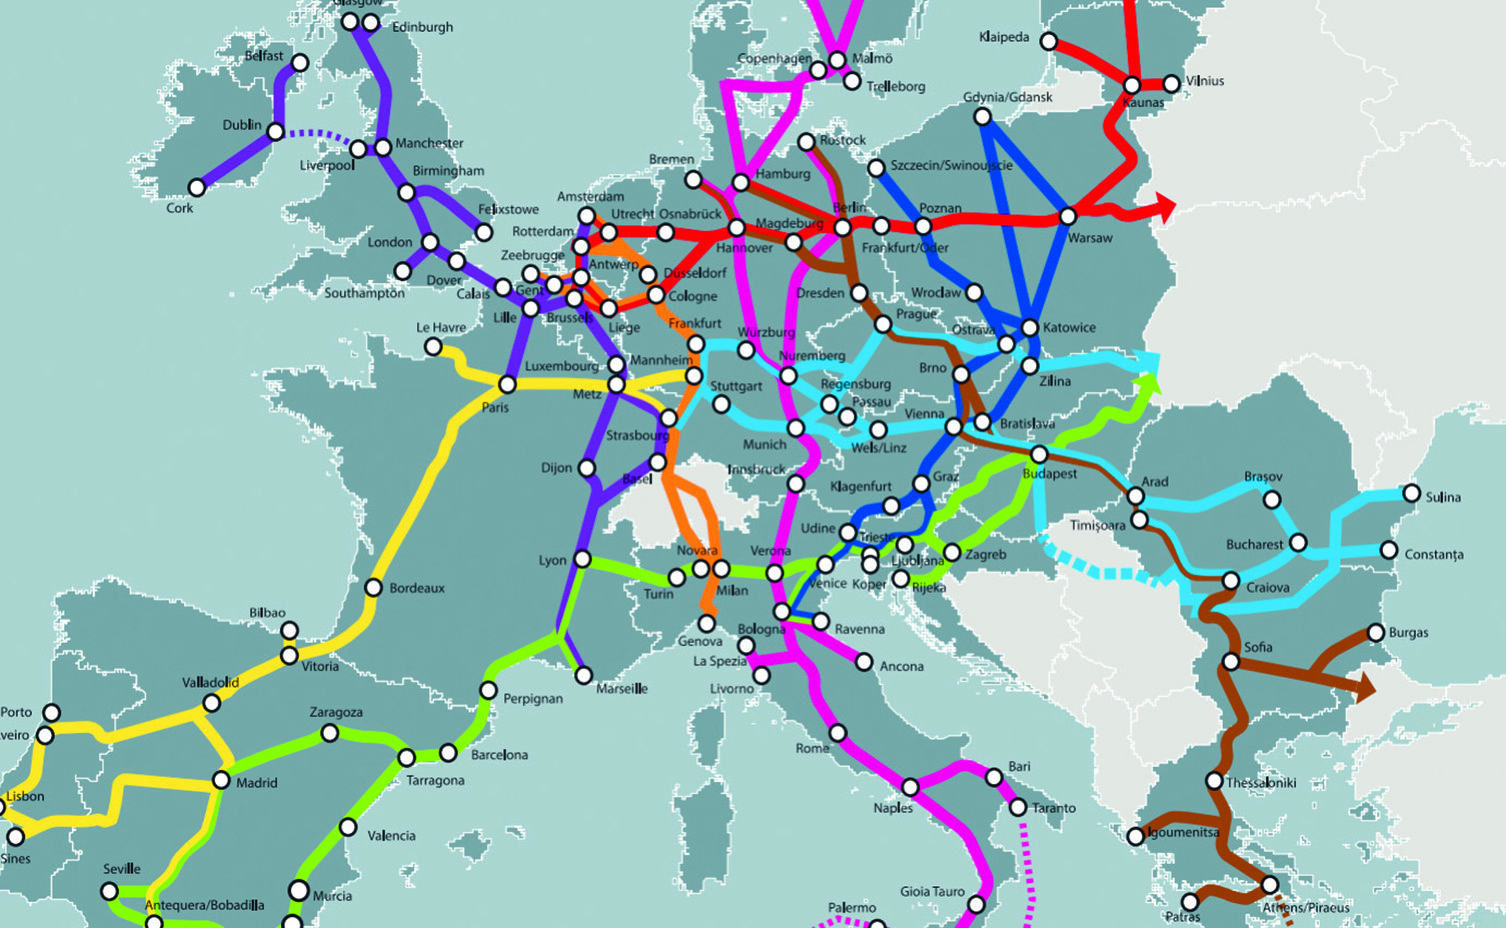 Карта транспорта туда. Карта транспортных путей Европы. Основные транспортные магистрали Западной Европы. Главные транспортные магистрали зарубежной Европы на карте. Судоходные реки зарубежной Европы.